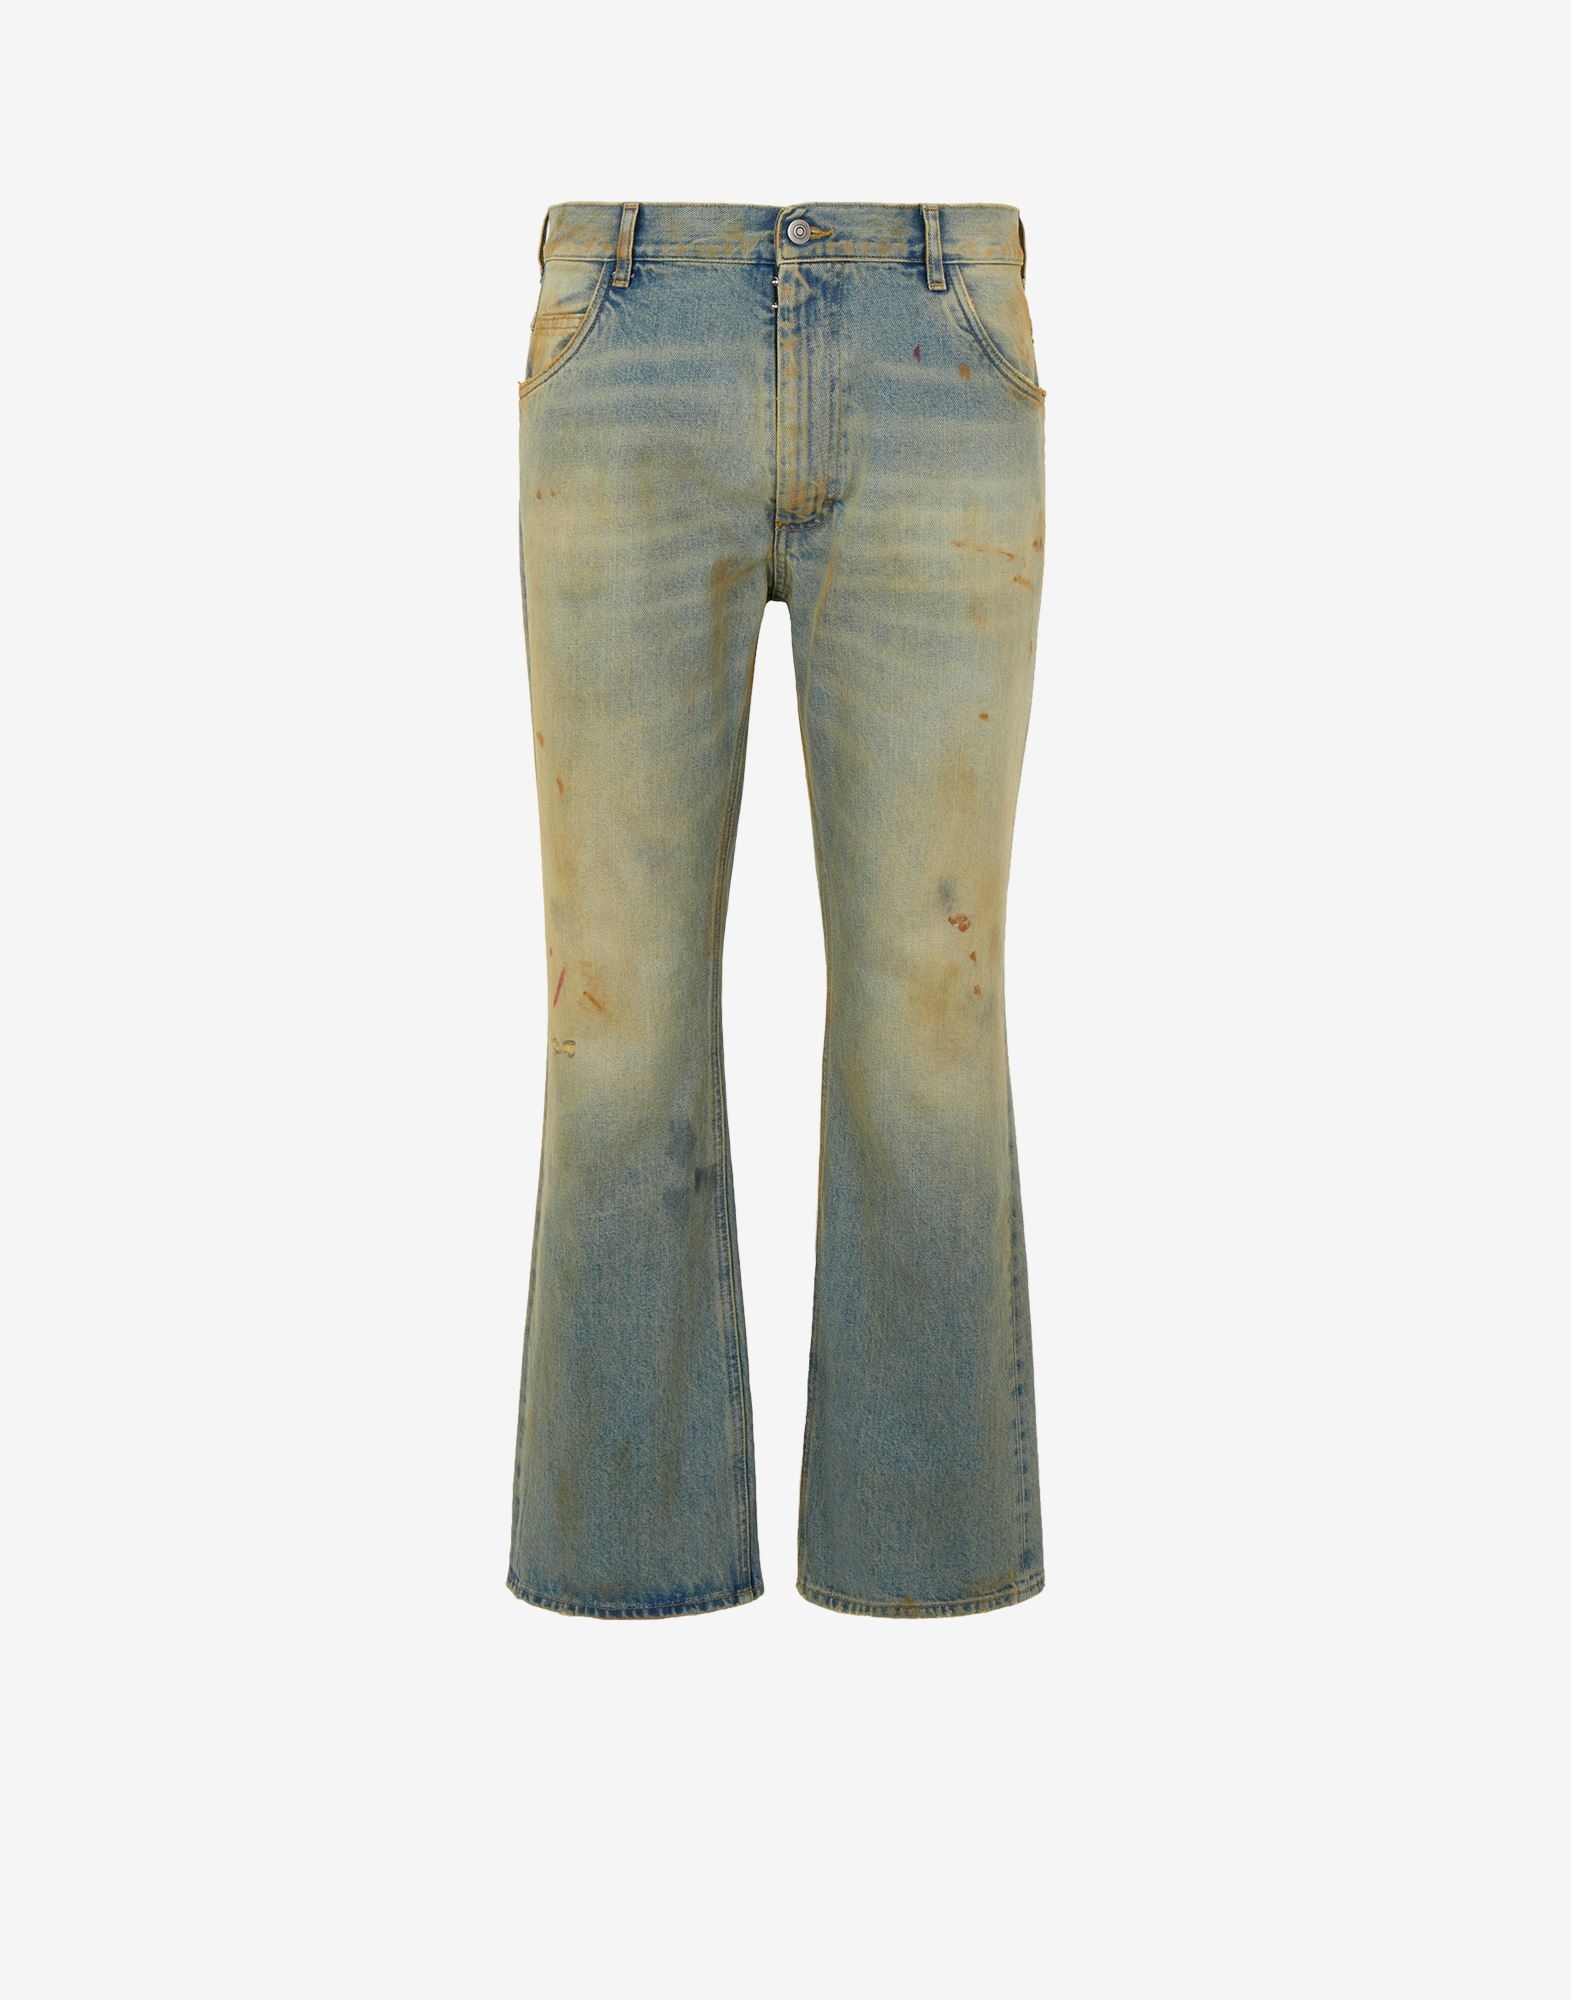 Vintage wash jeans - 1